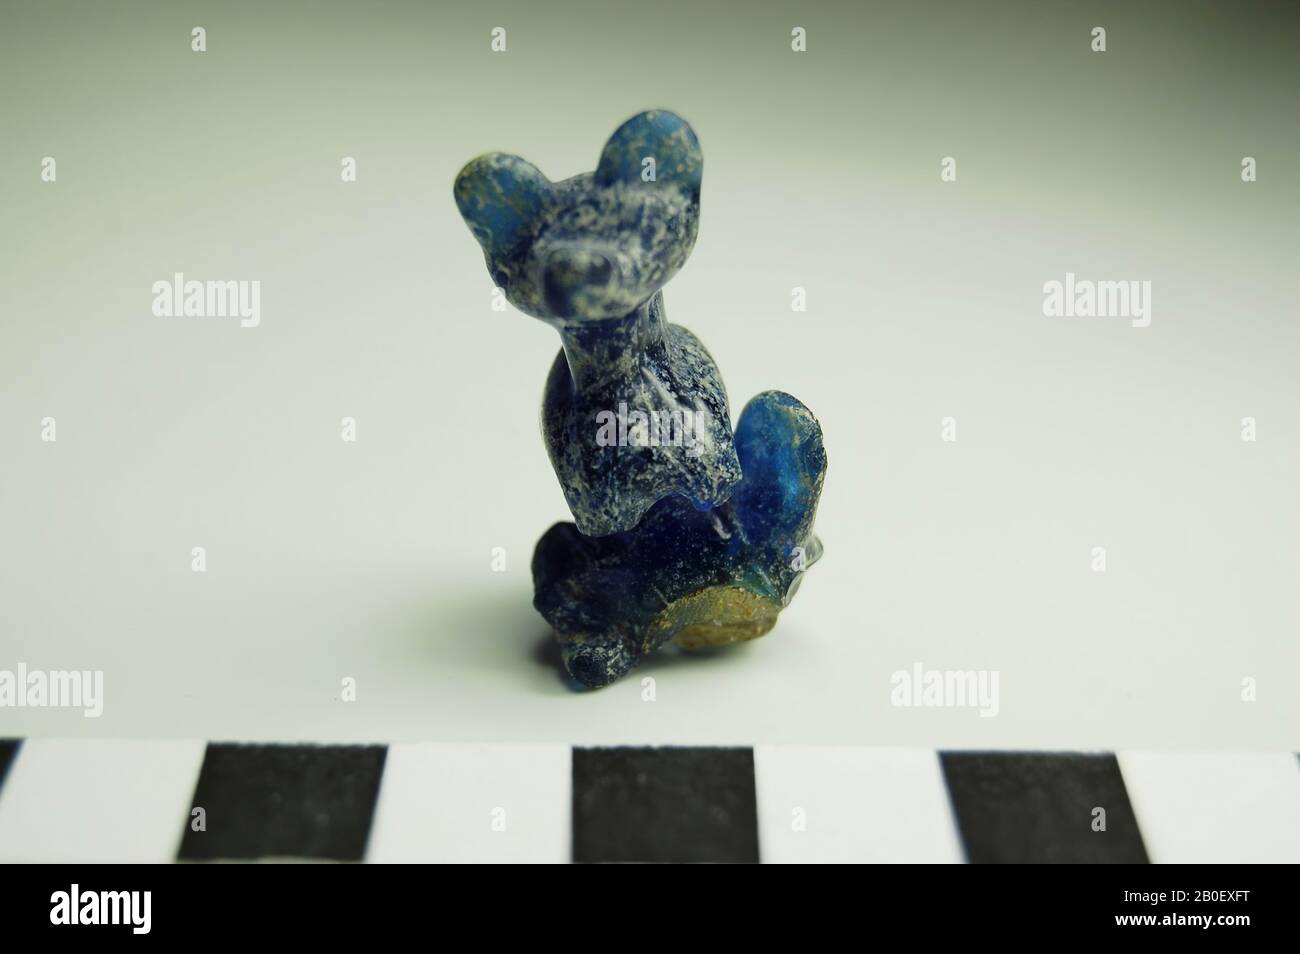 Hund, Amulet in Form eines sitzenden Hundes aus dunkelblauem, transparentem Glas., Amulet, Tier, Glas, Sandkernmethode, 3,5 x 2 x 1,7 cm, 3. Jahrhundert v. Chr., Ägypten Stockfoto